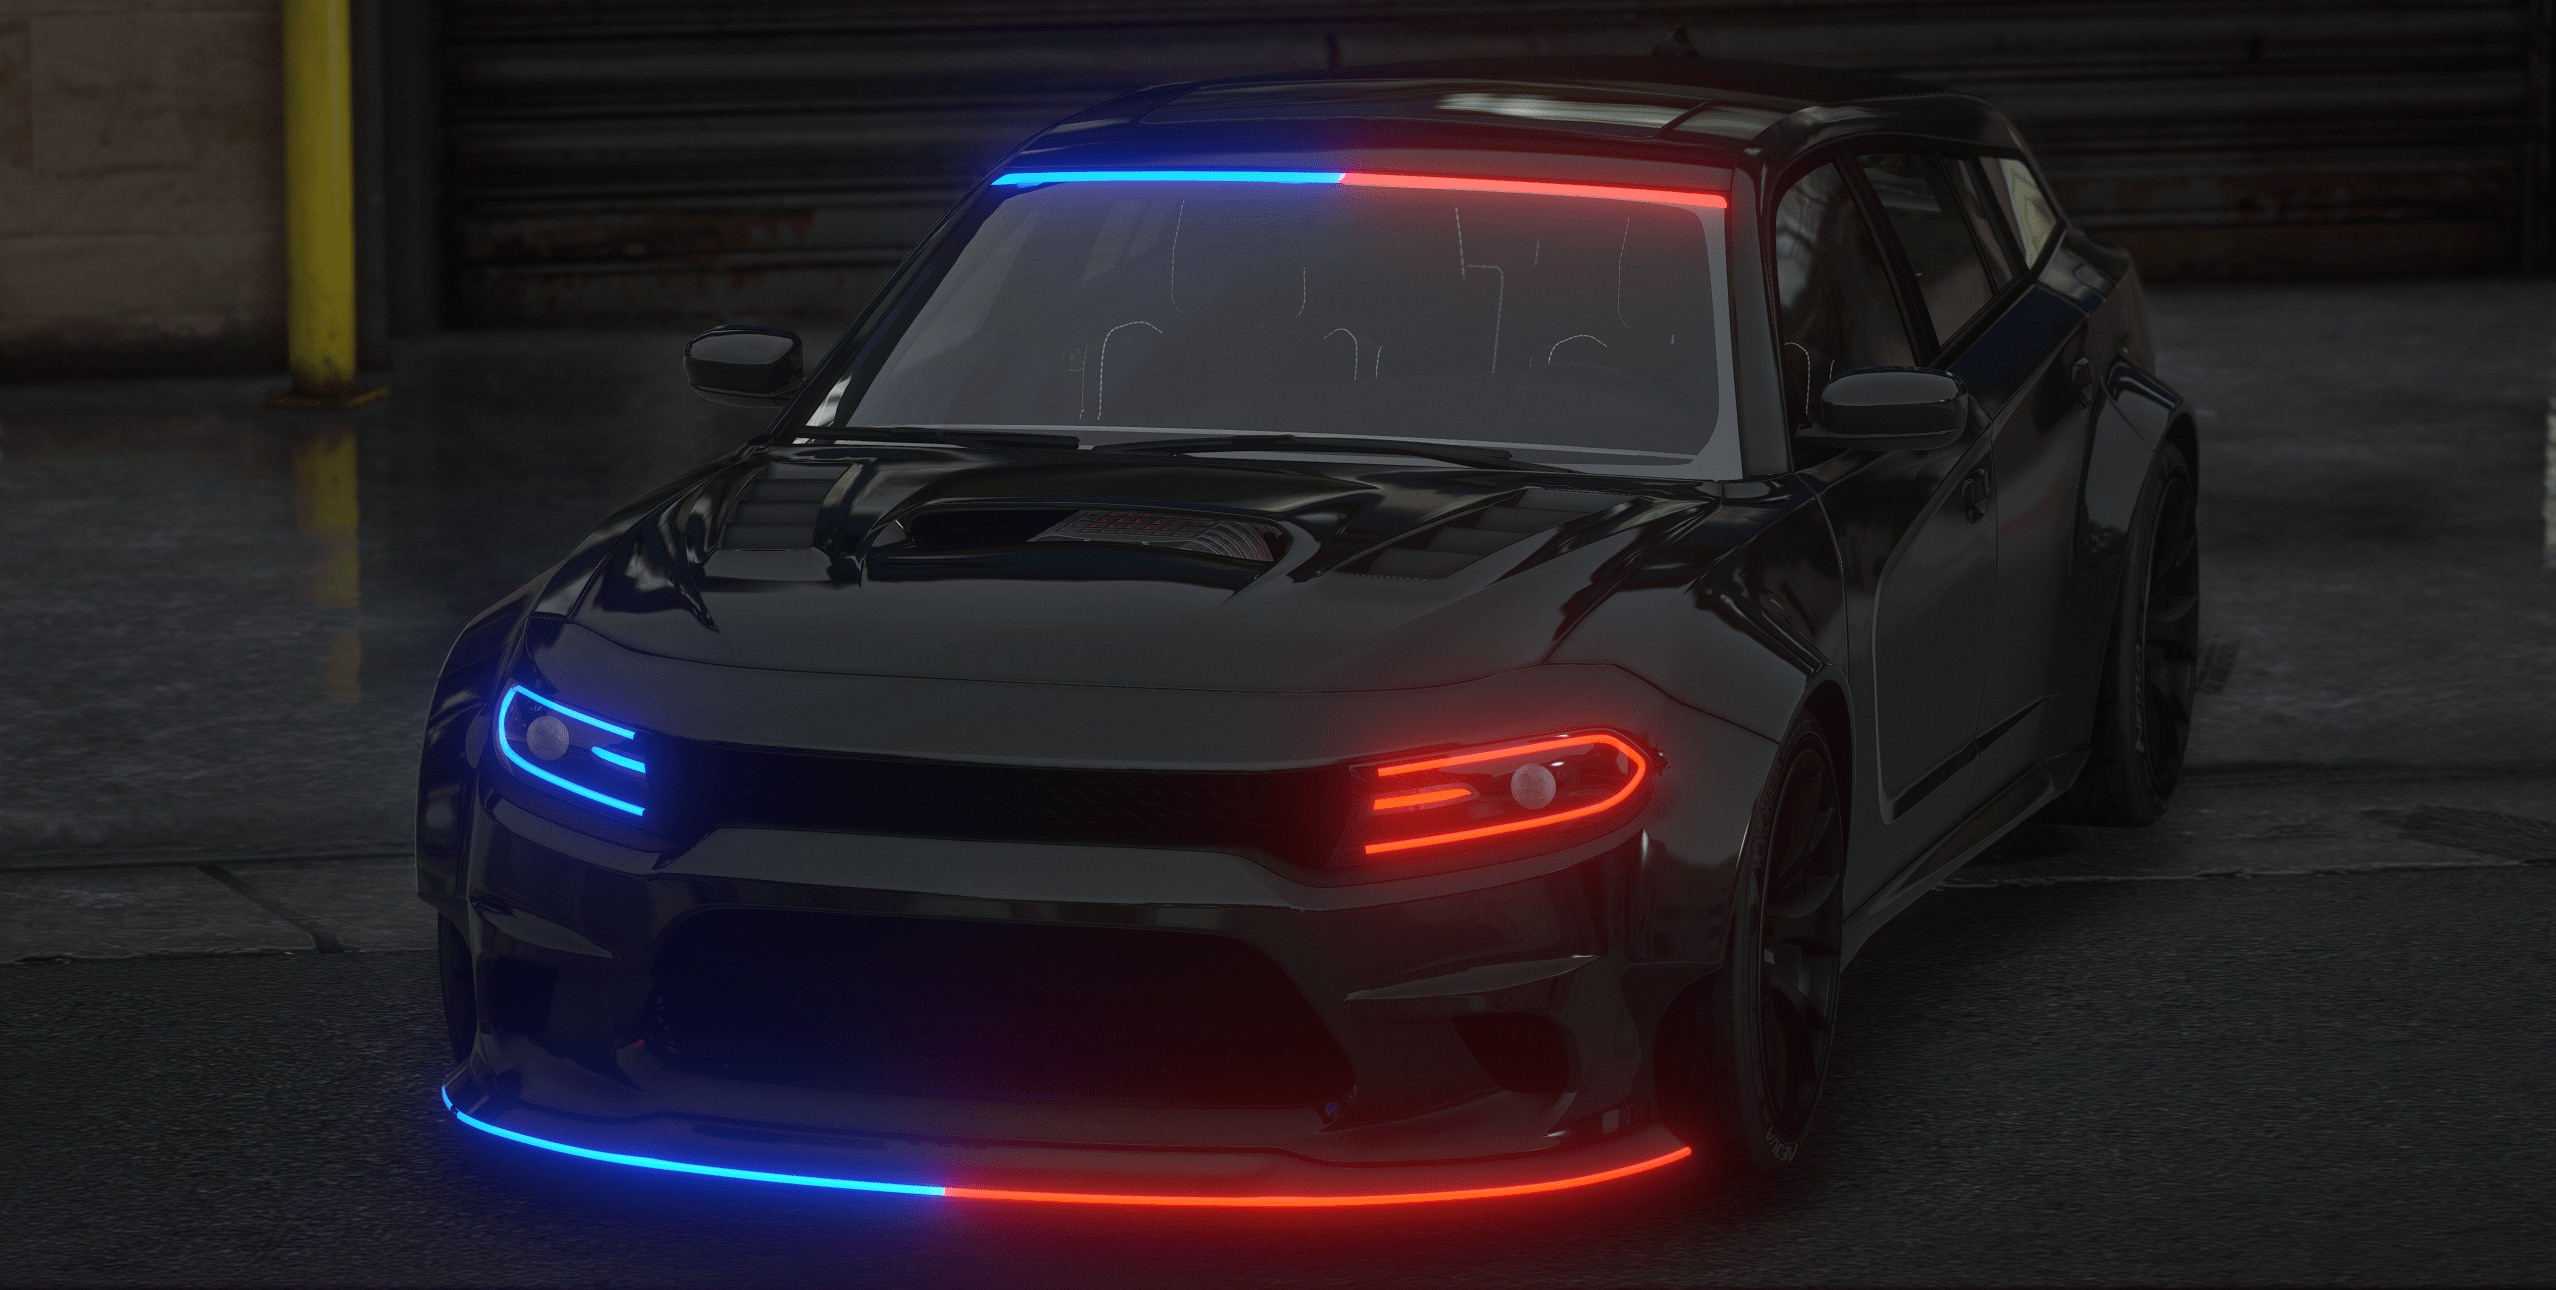 2019 Dodge Charger SRT Wagon FiveM Police Vehicle